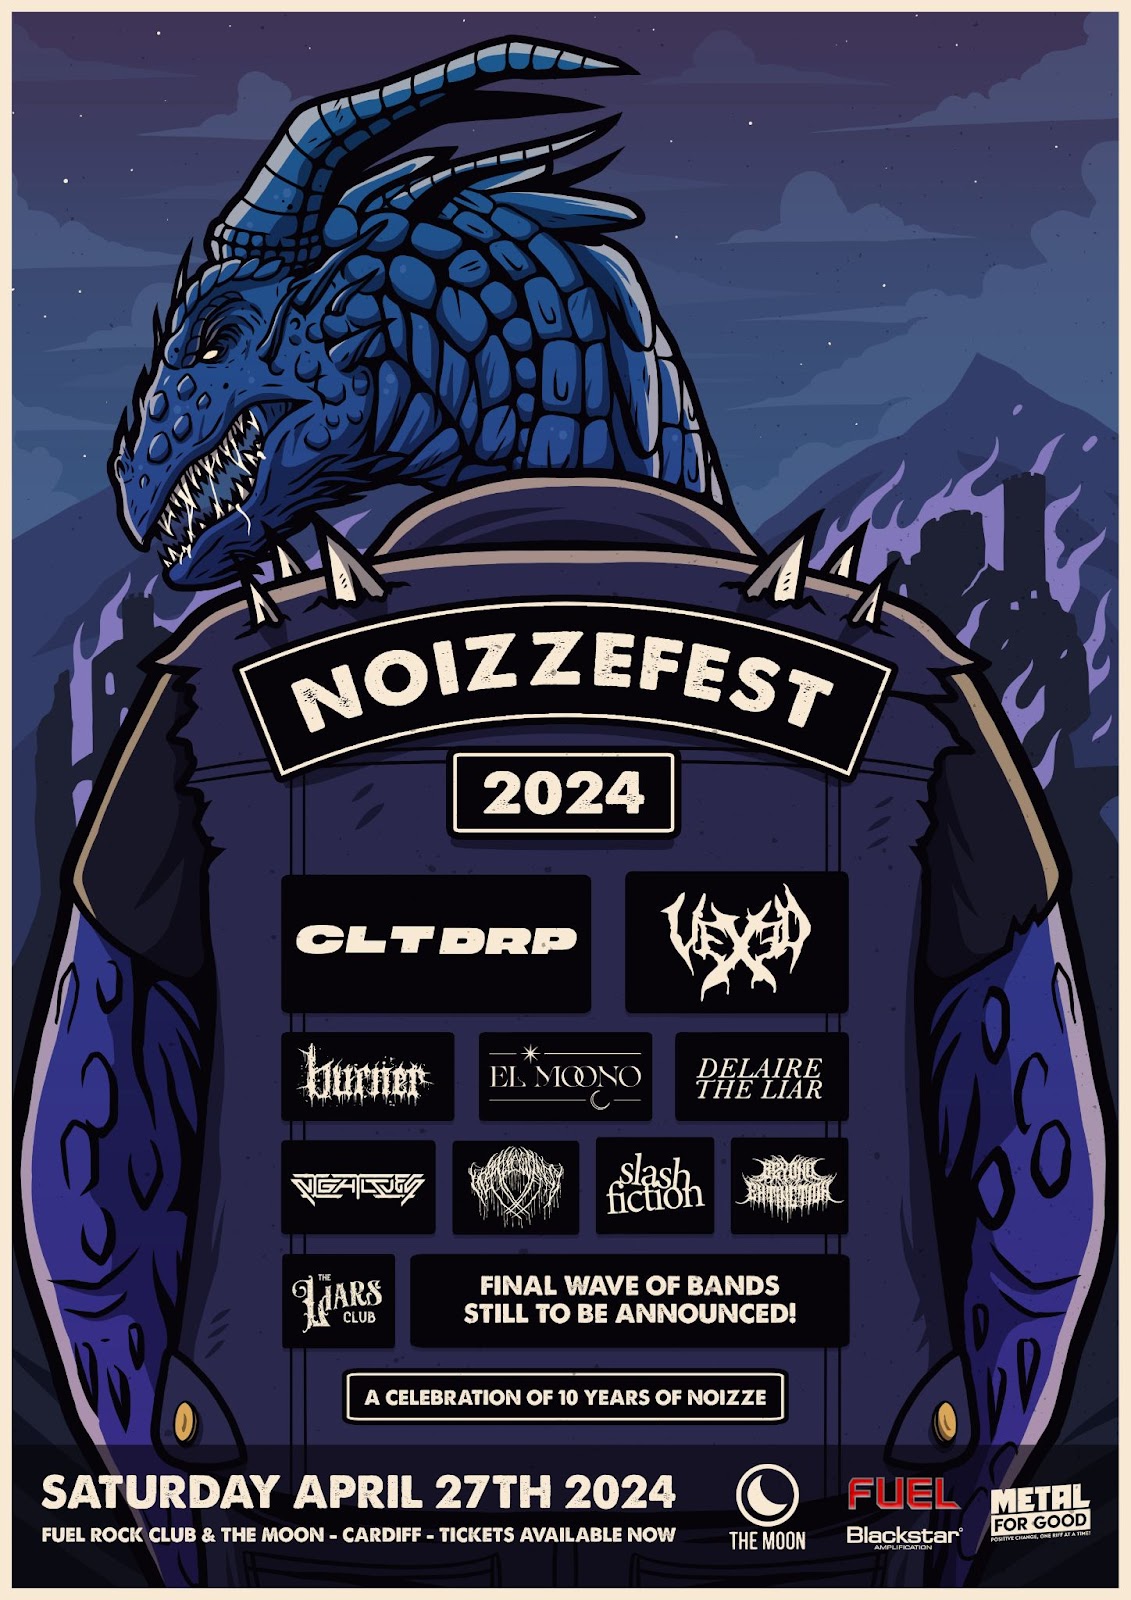 Noizzefest 2024 - Announcement 2